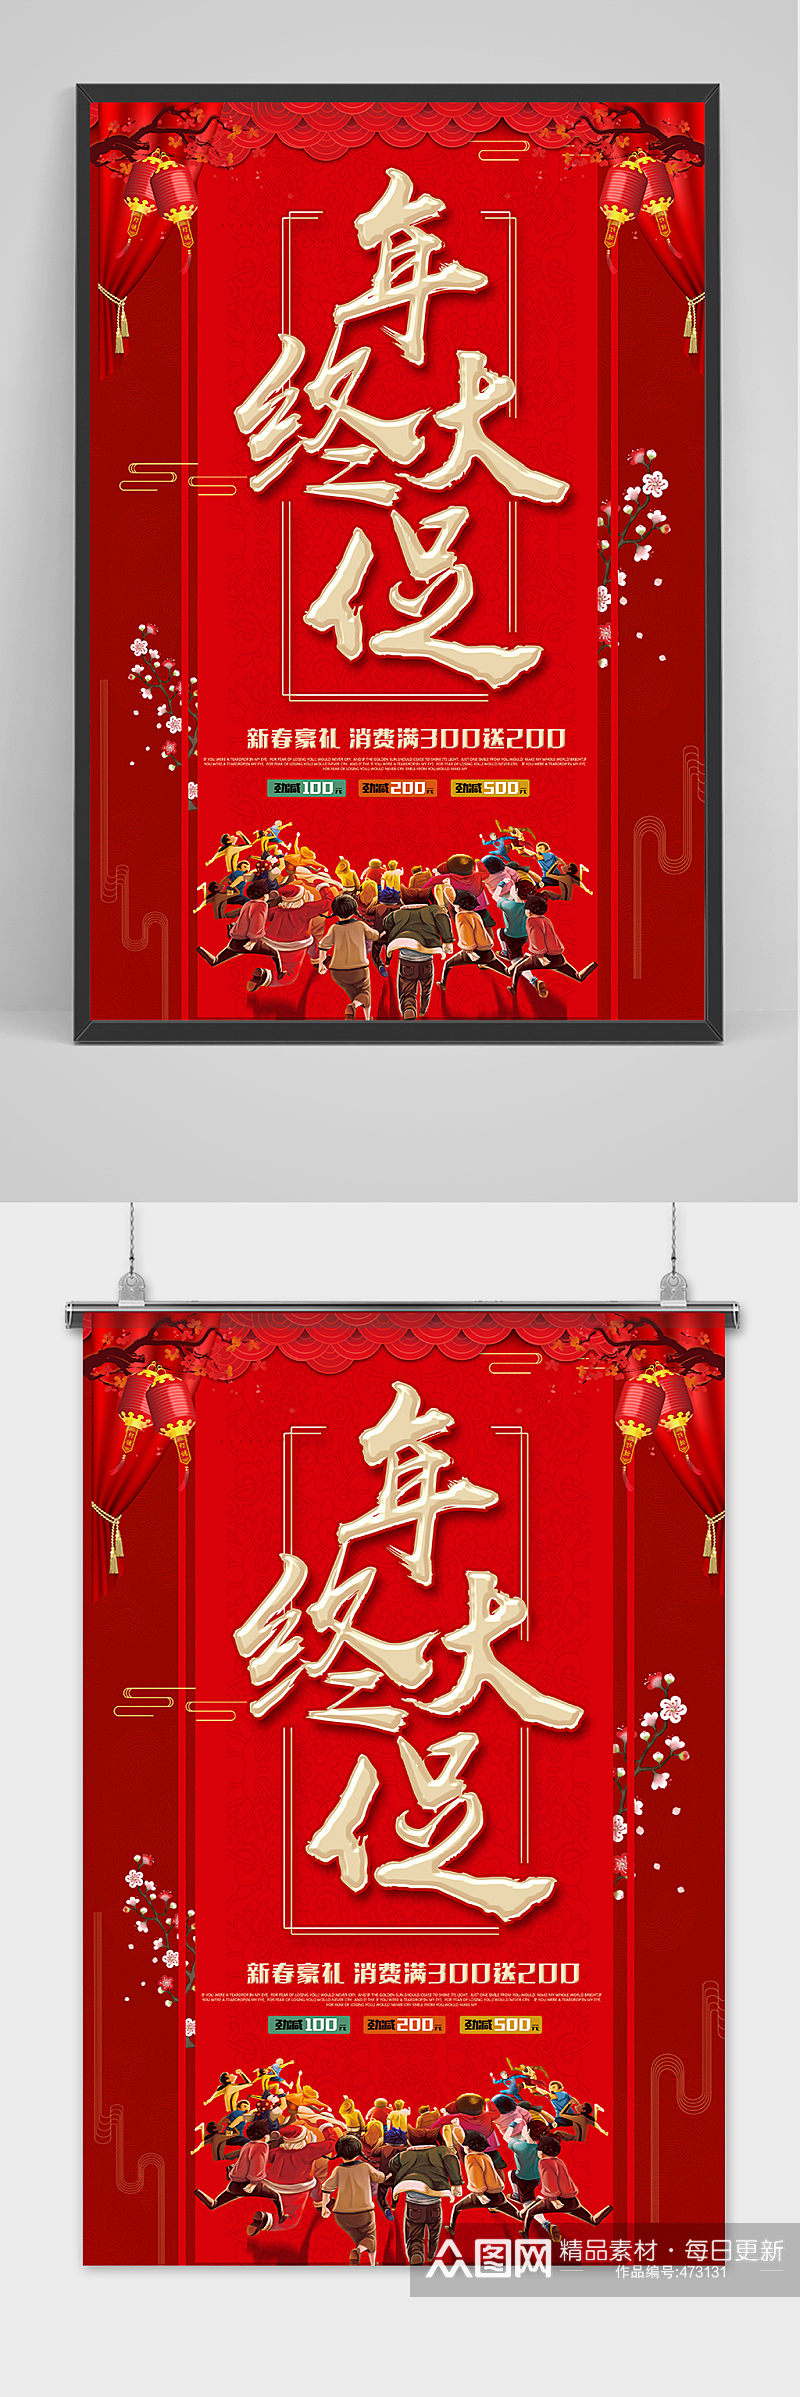 红色喜庆年终大促海报设计素材